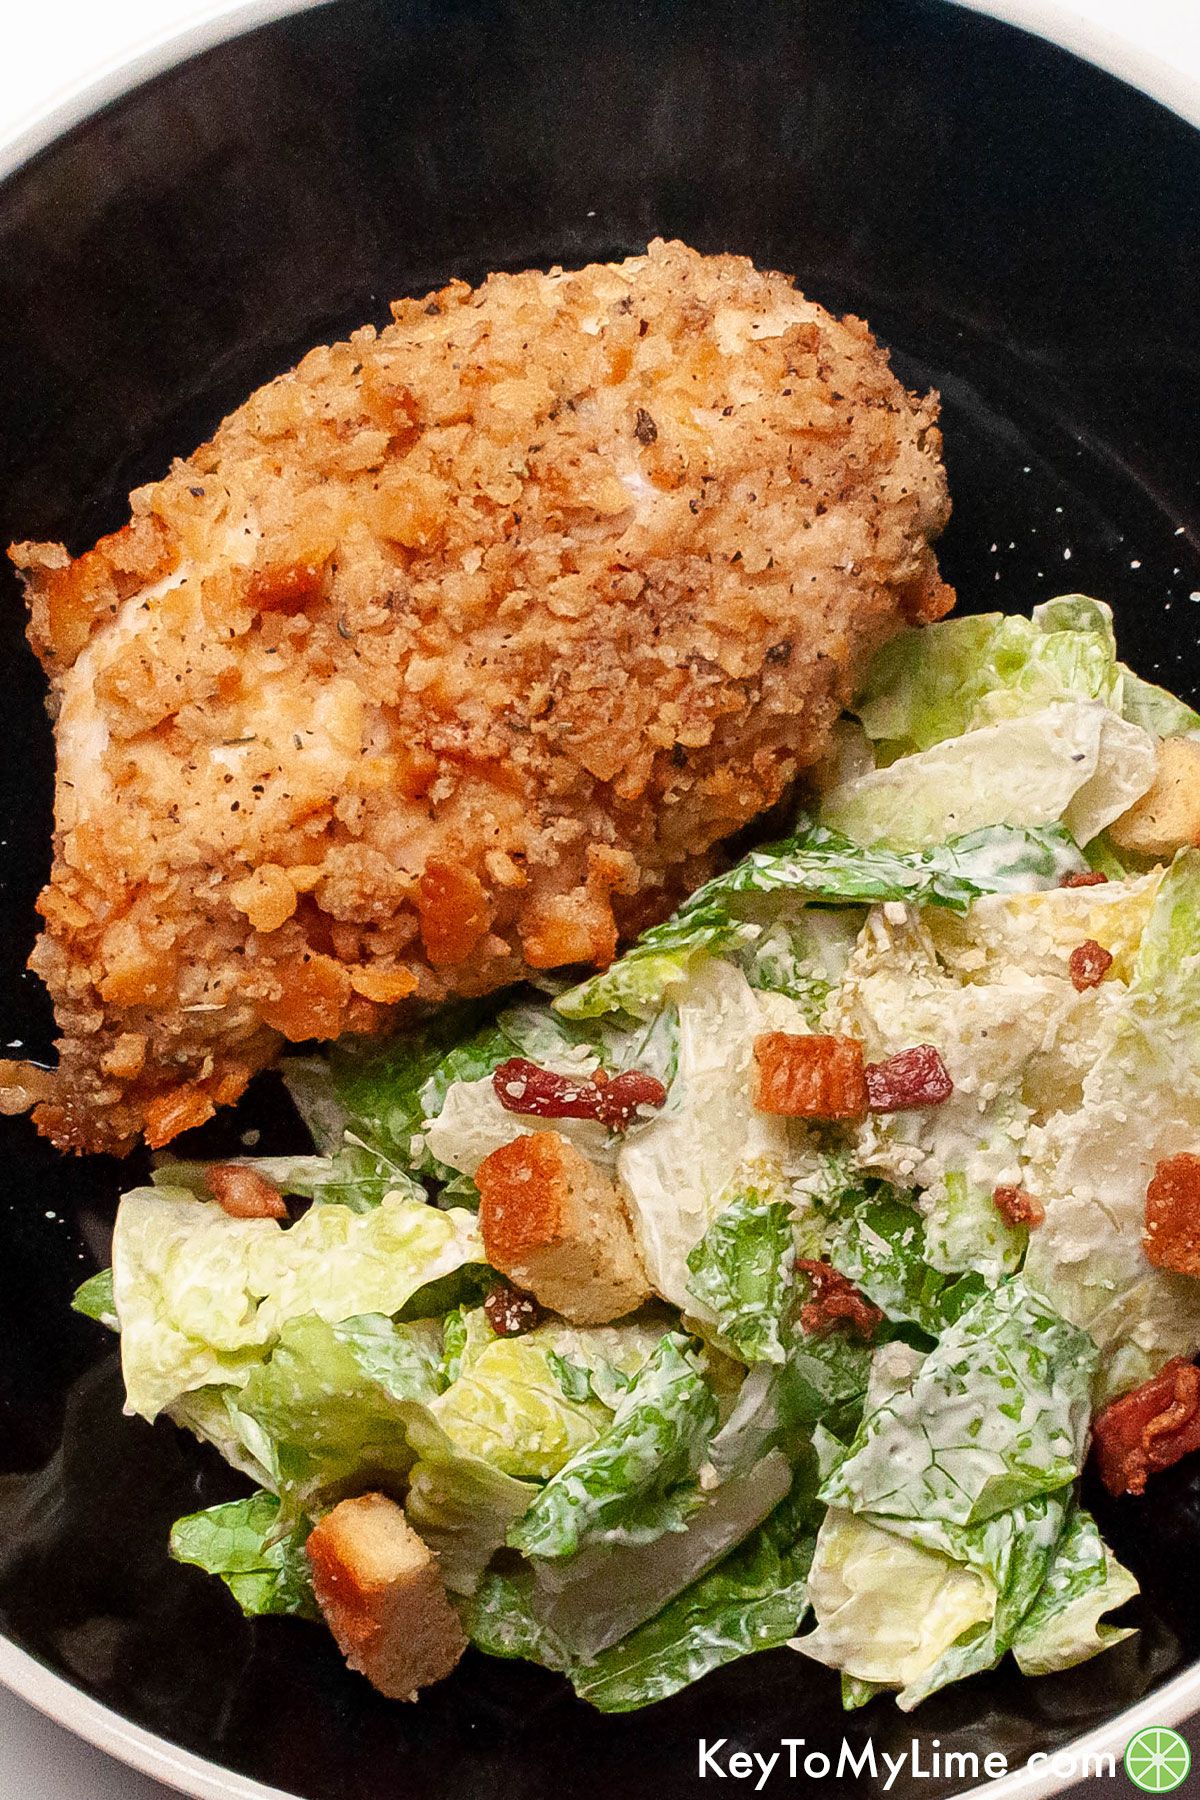 Crispy Ritz cracker chicken next to a salad.